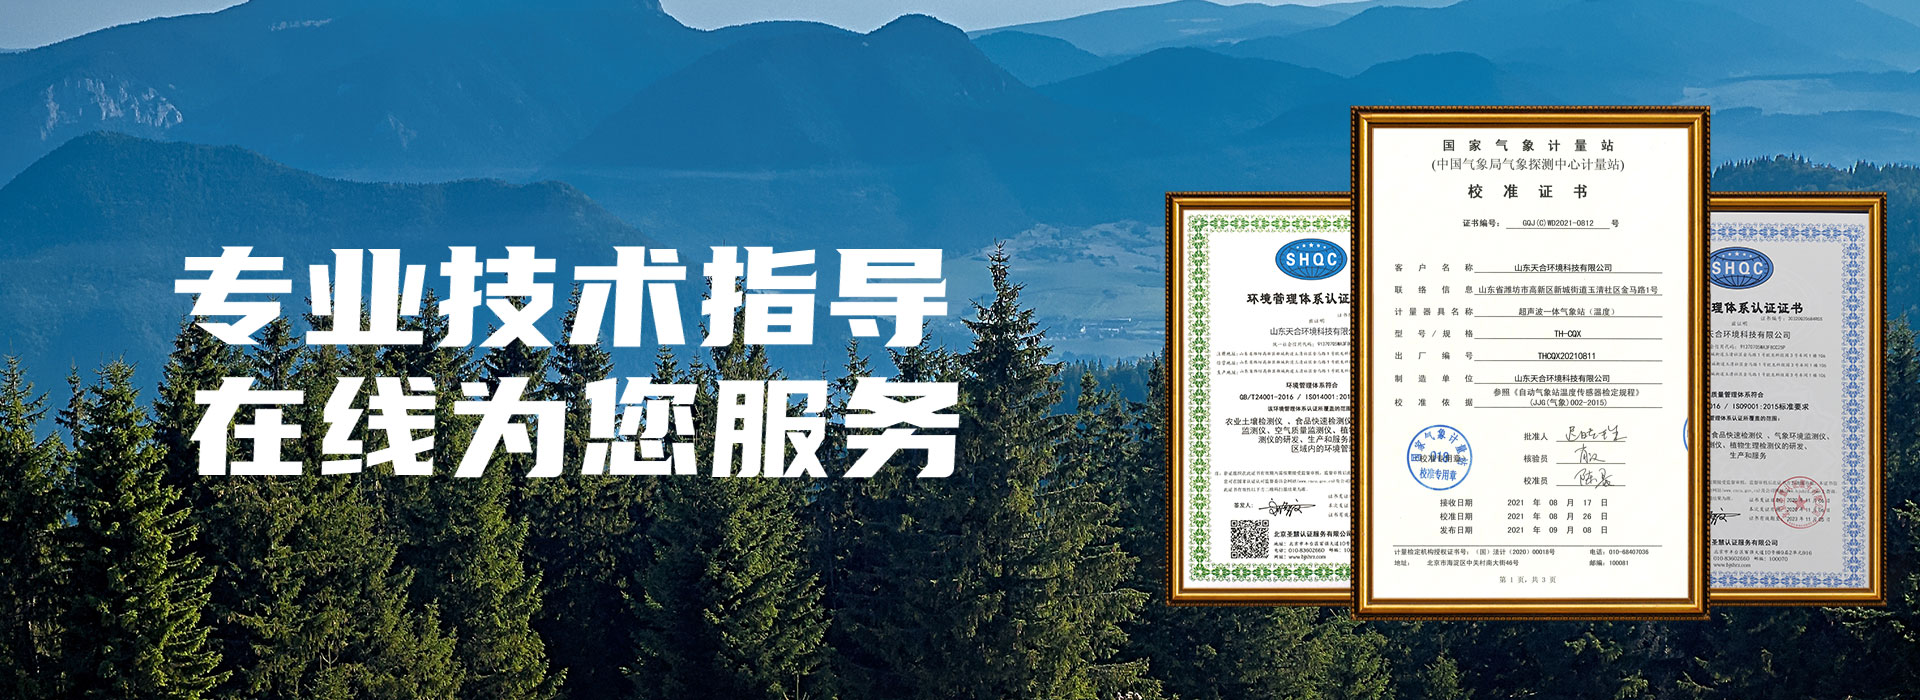 《日光温室小气候监测技术规范》被列入内蒙古区域标准修订项目